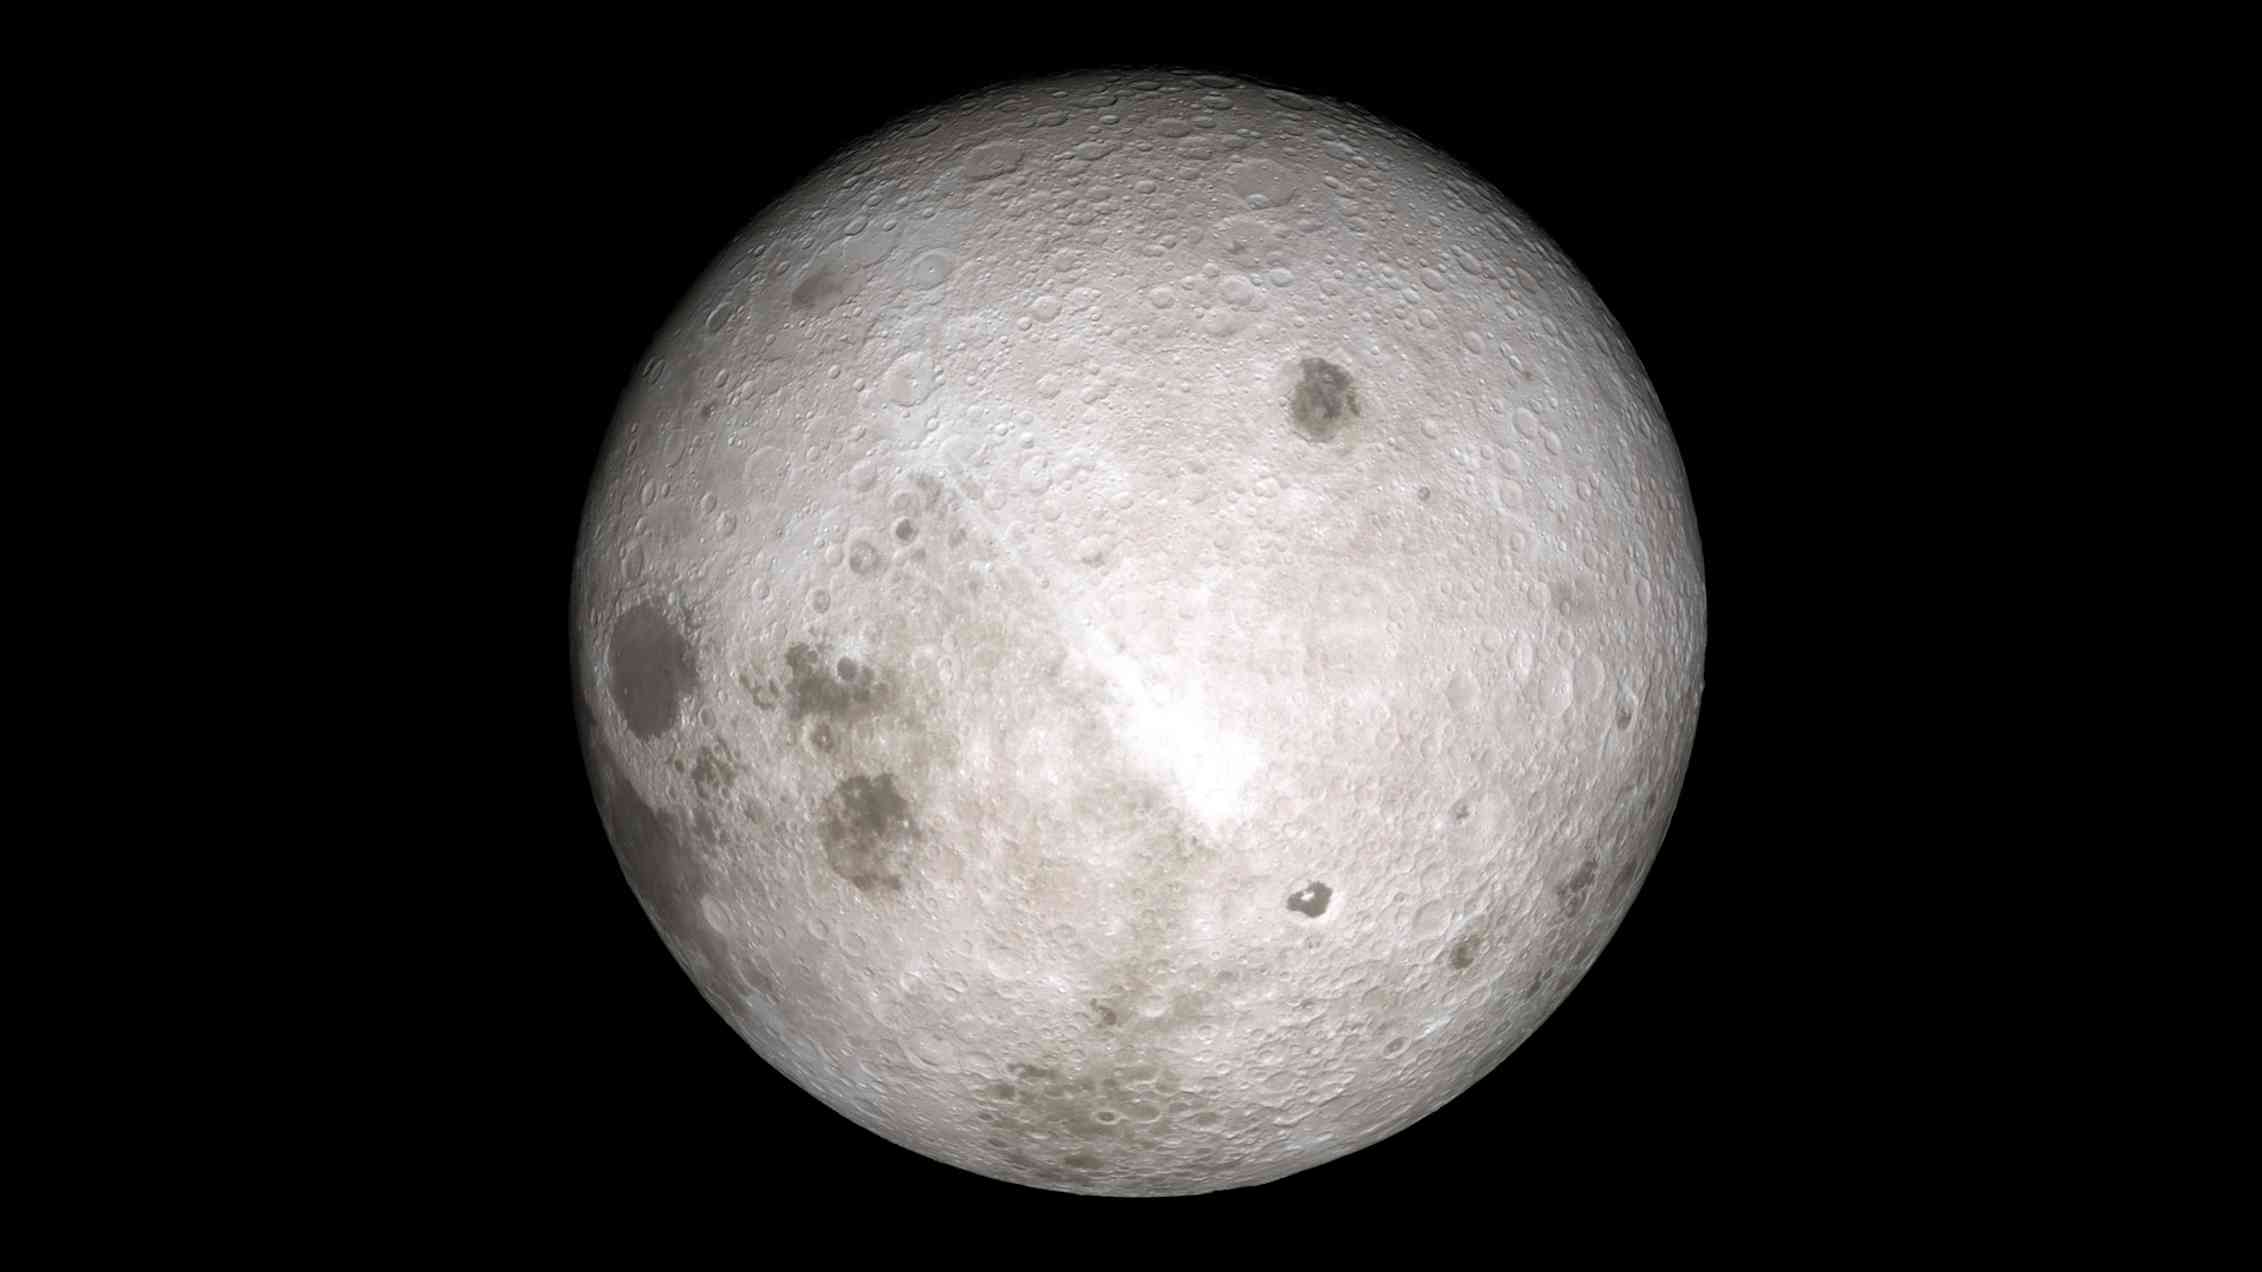 Other the moon. Невидимая сторона Луны. Обратная сторона Луны фото. Обратная сторона Луны НАСА. Снимки обратной стороны Луны.